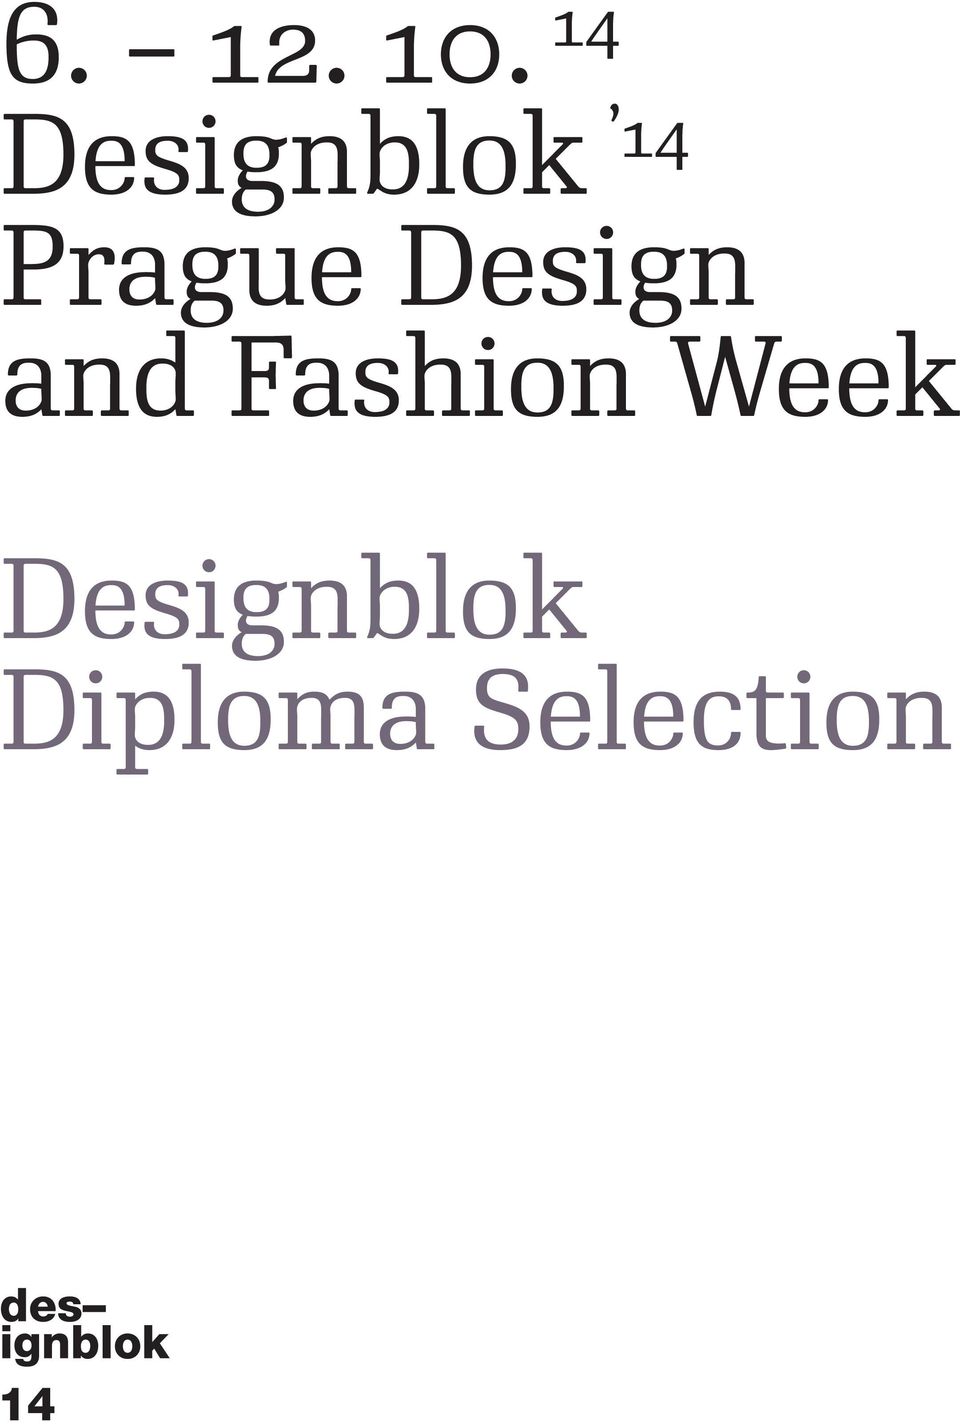 Prague Design and